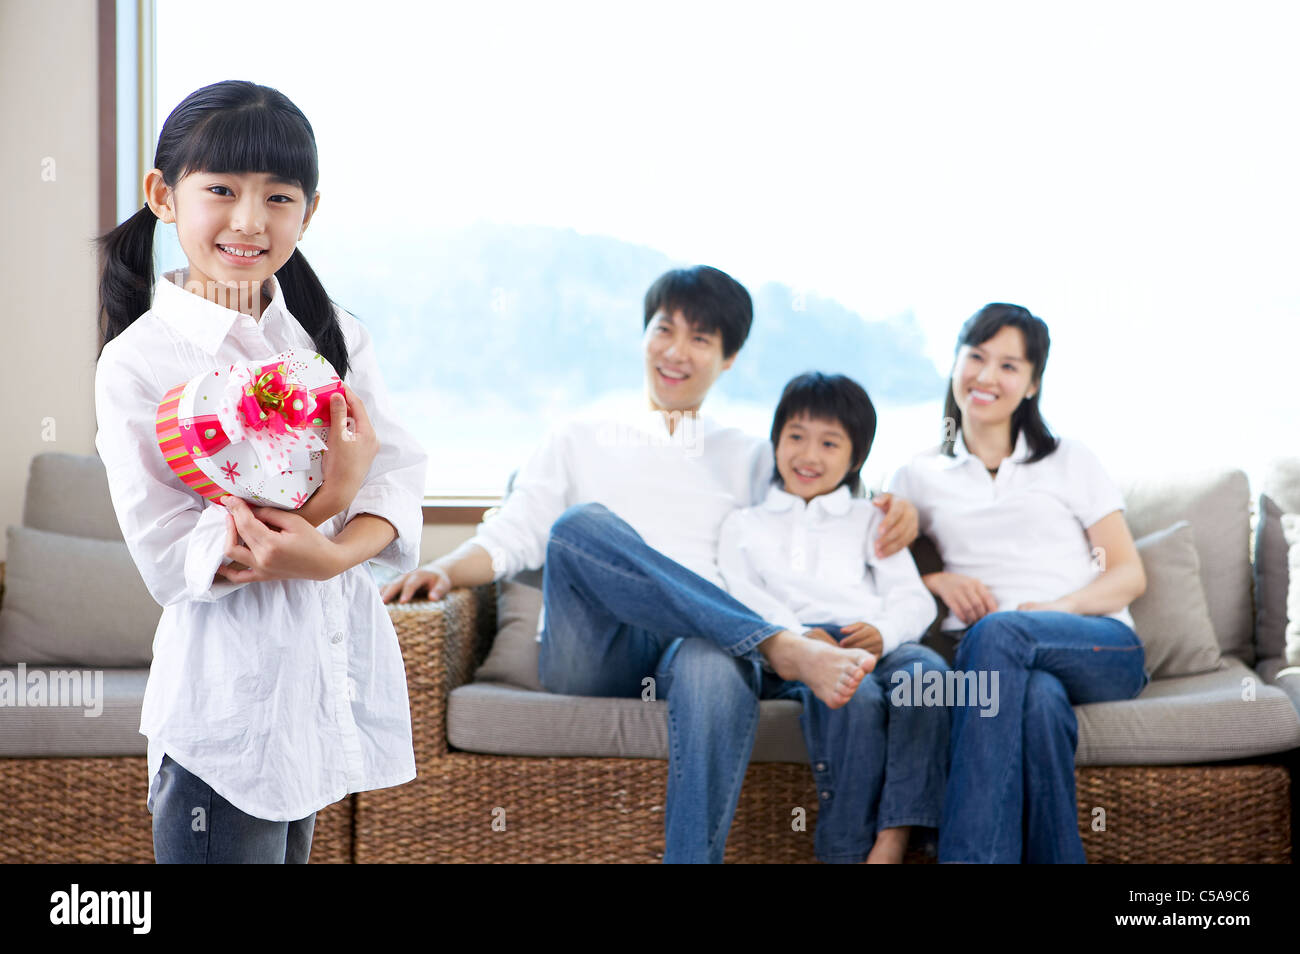 Portrait de fille holding heart shape box, tandis que les parents et le frère de sitting on sofa Banque D'Images